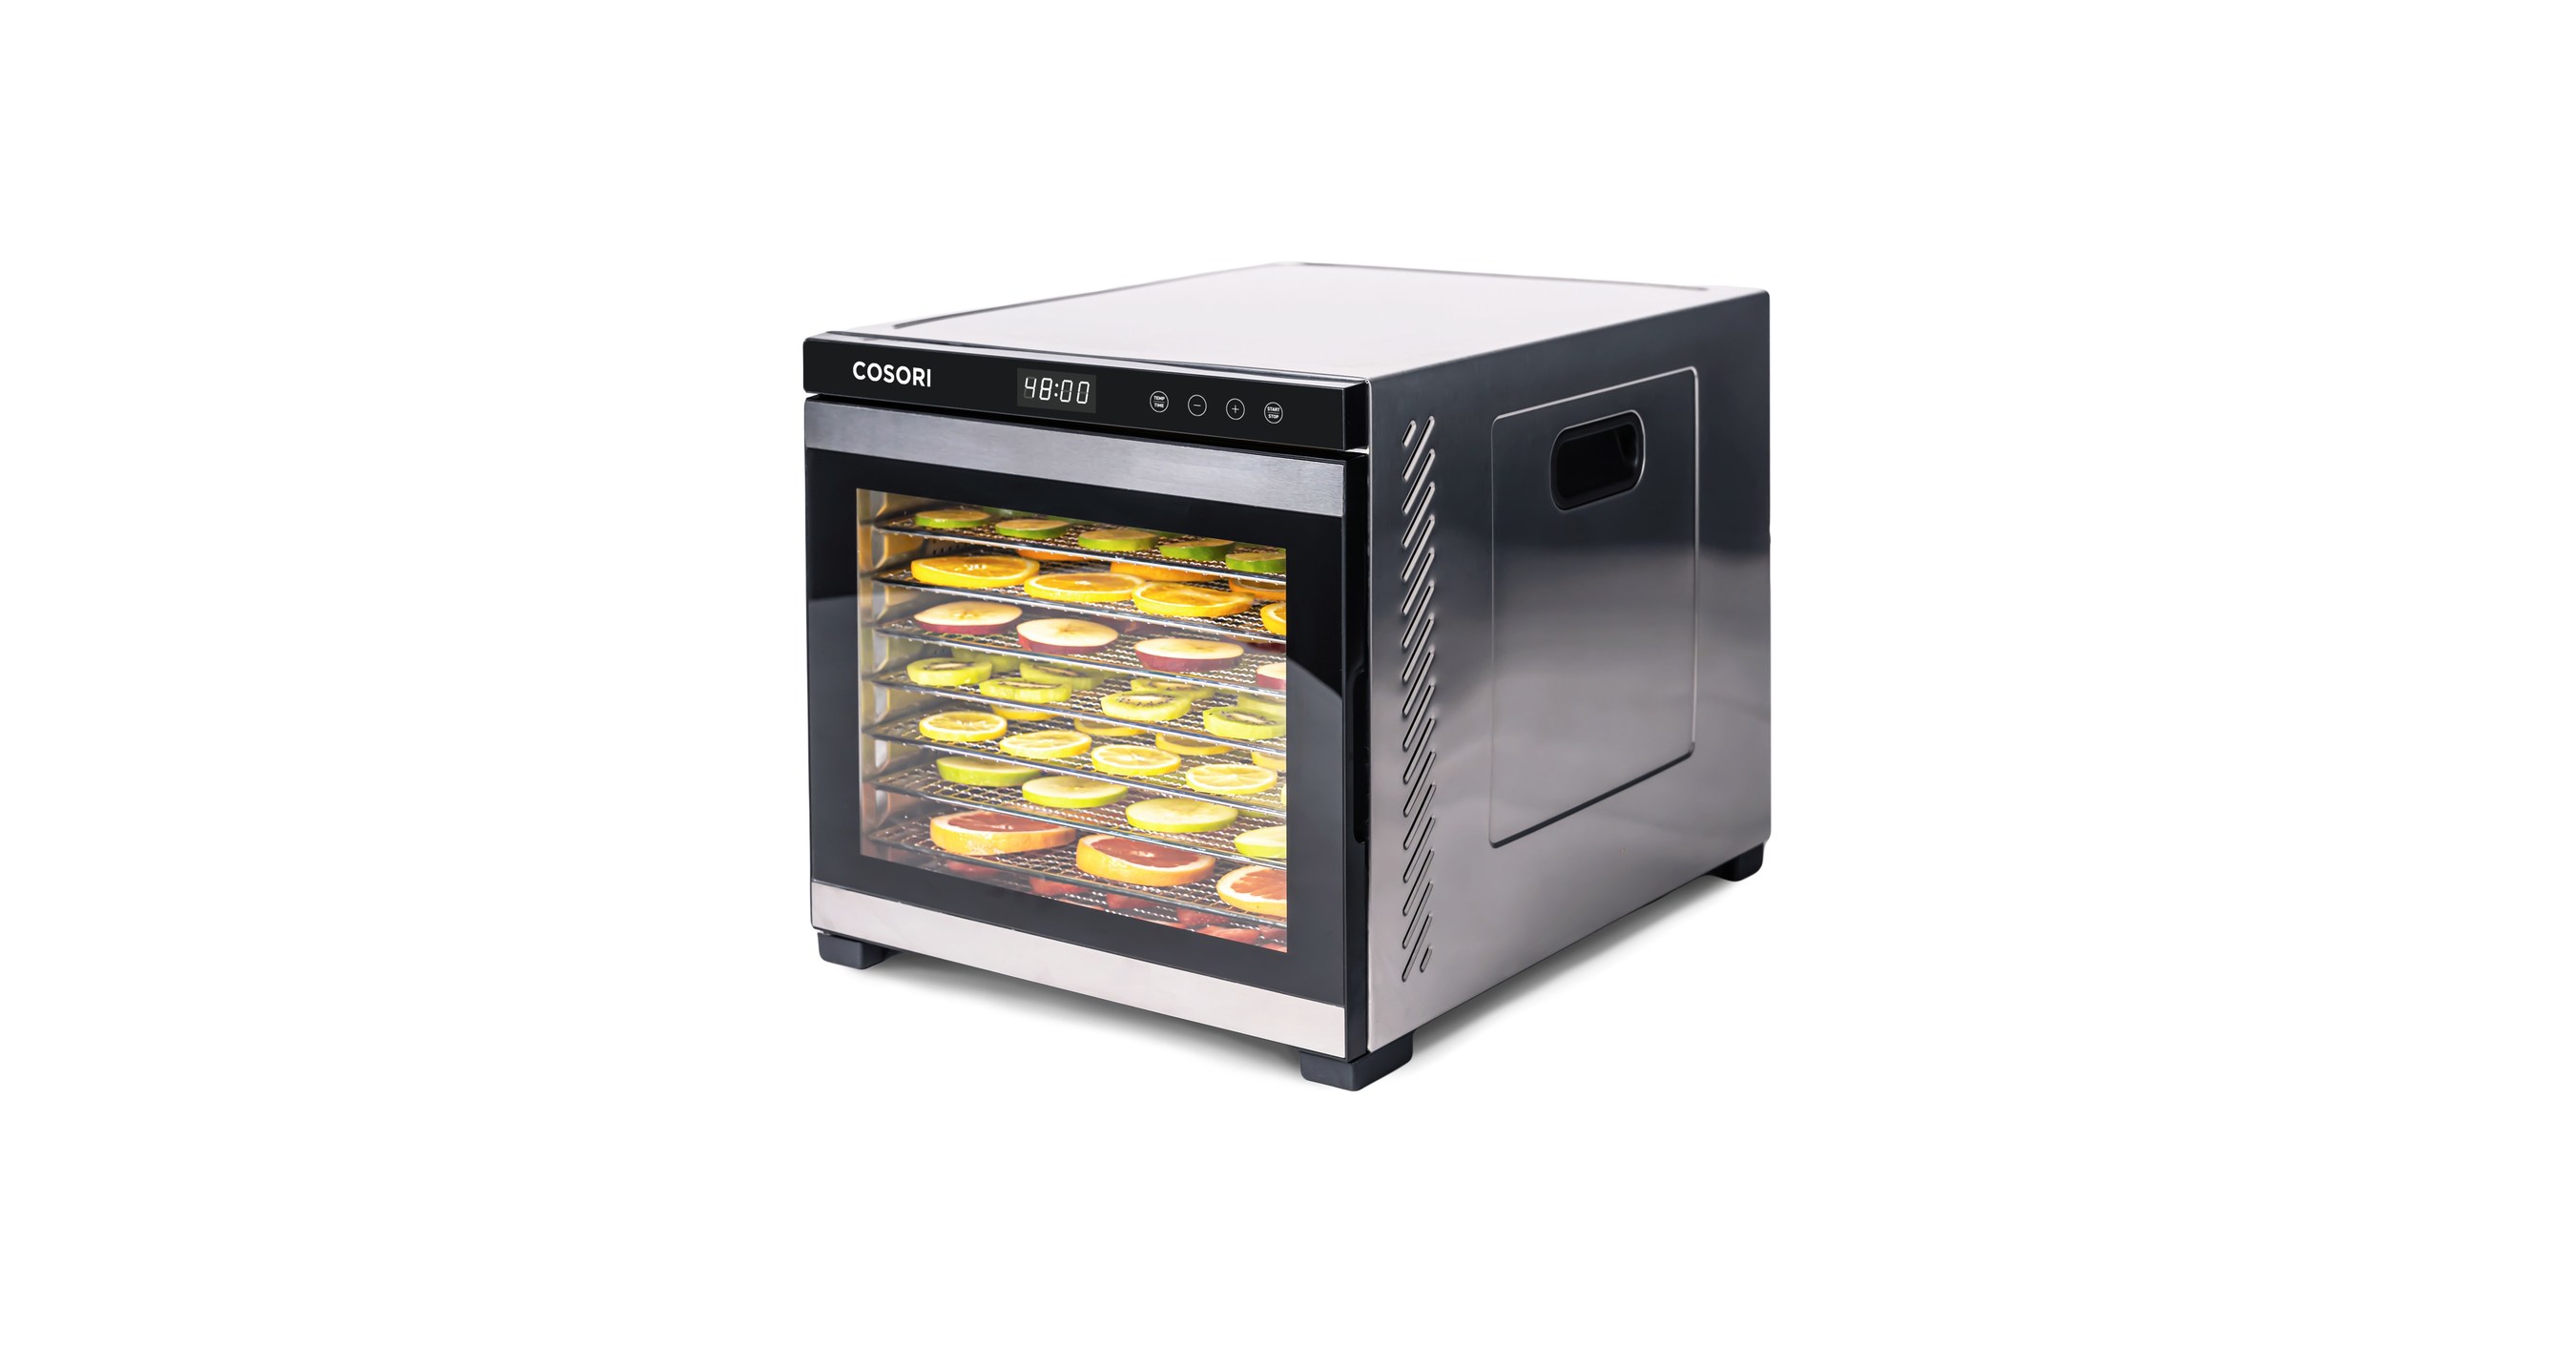 Cosori Premium Food Dehydrator Machine, 6 Stainless Steel Trays